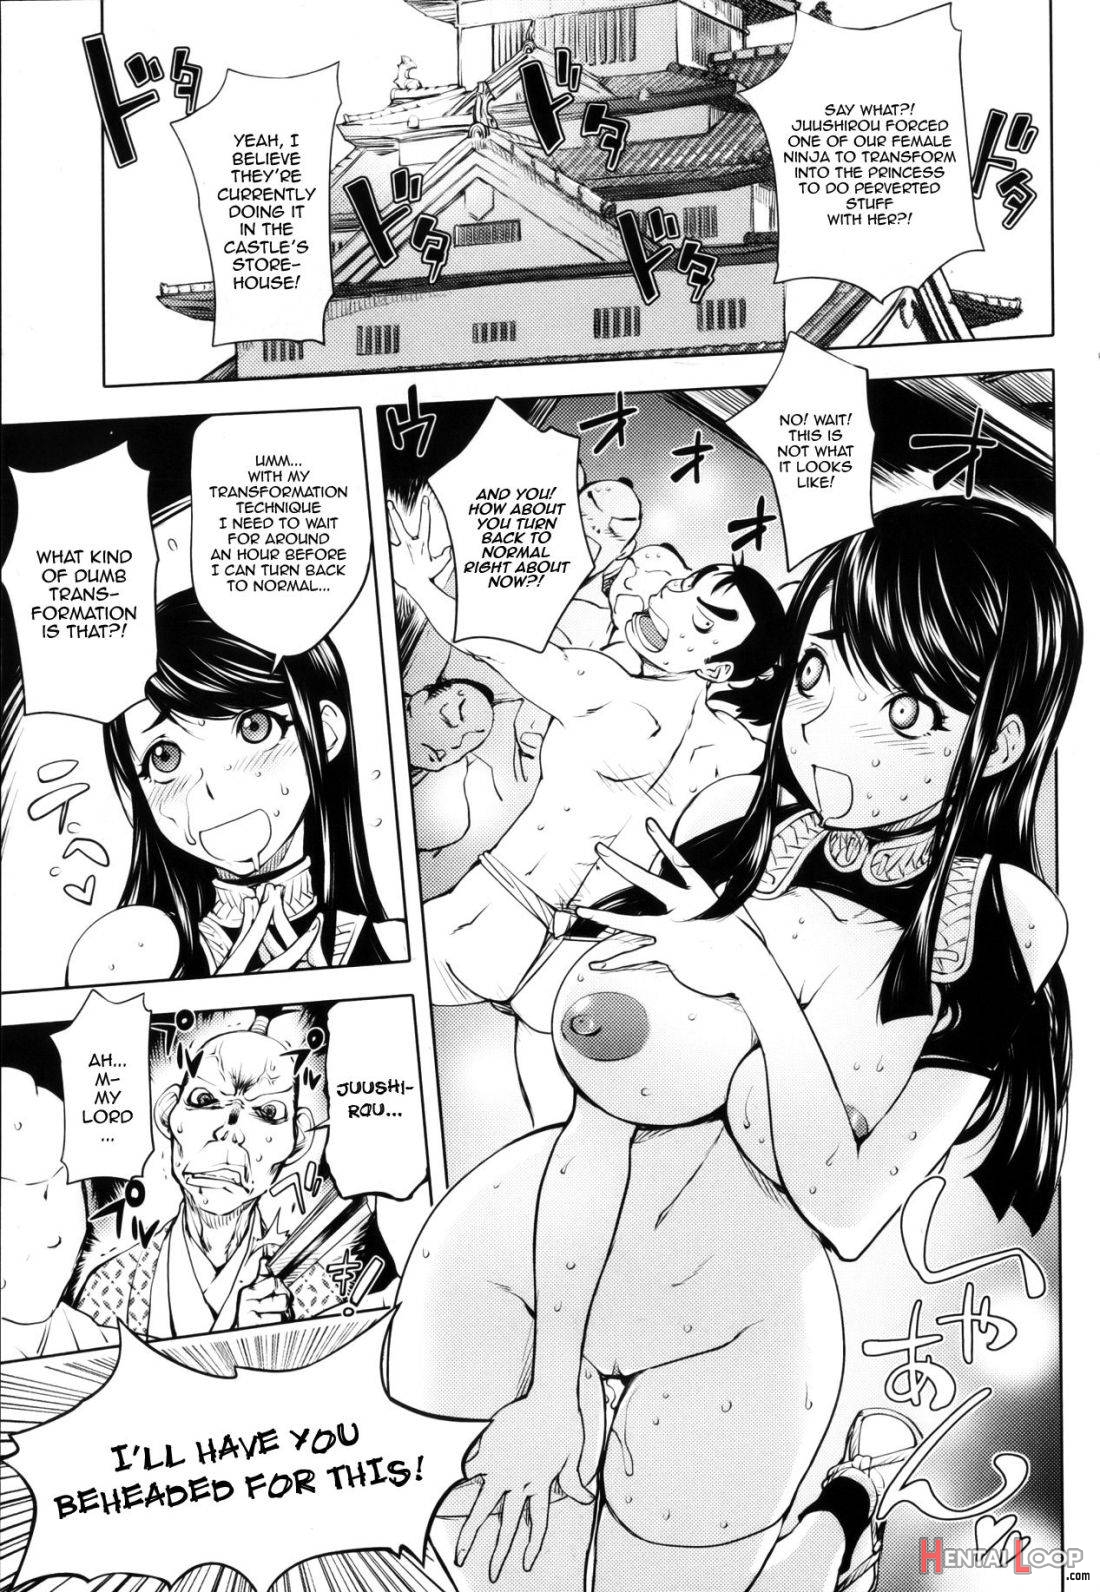 Torokeru Kunoichi Ntr Story + Prequel page 9